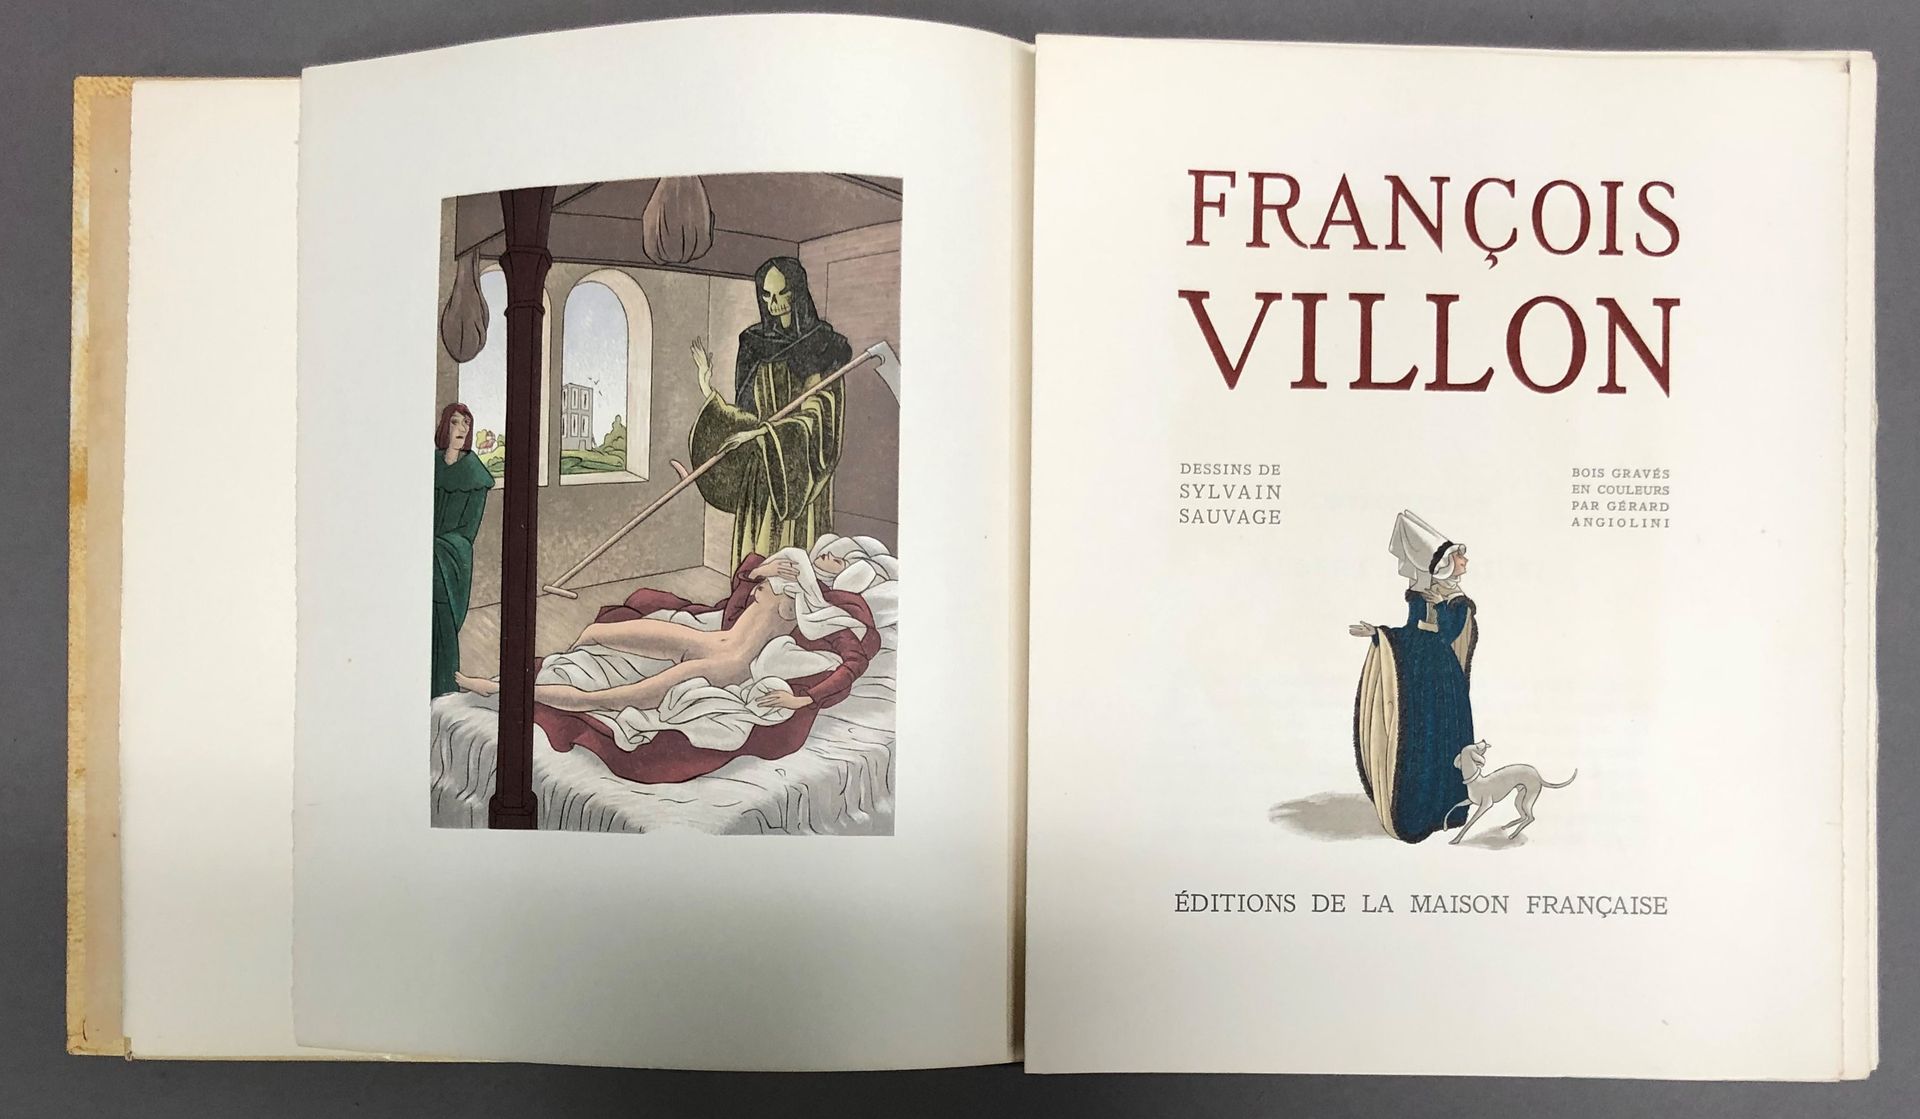 Null 拍品包括
- VILLON (François).弗朗索瓦-维永。西尔万-索瓦格的画作。杰拉德-安吉利尼的彩色木刻。巴黎，法国之家出版社，1948年。&hellip;